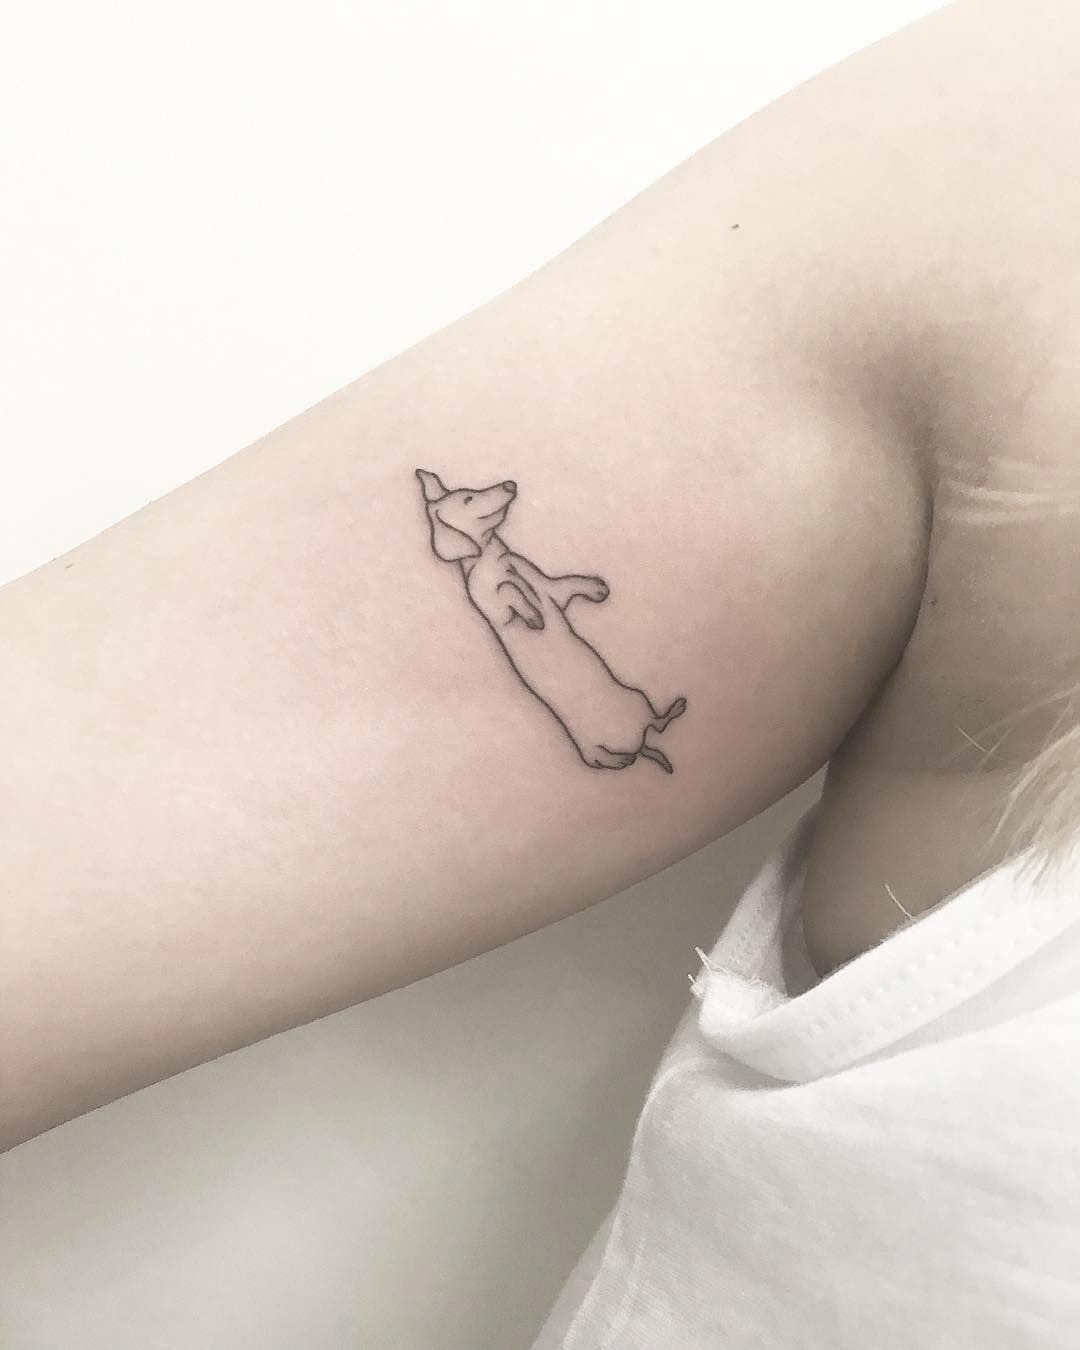 14 Minimalist Tattoo Ideas For Dachshund Lovers - PetPress